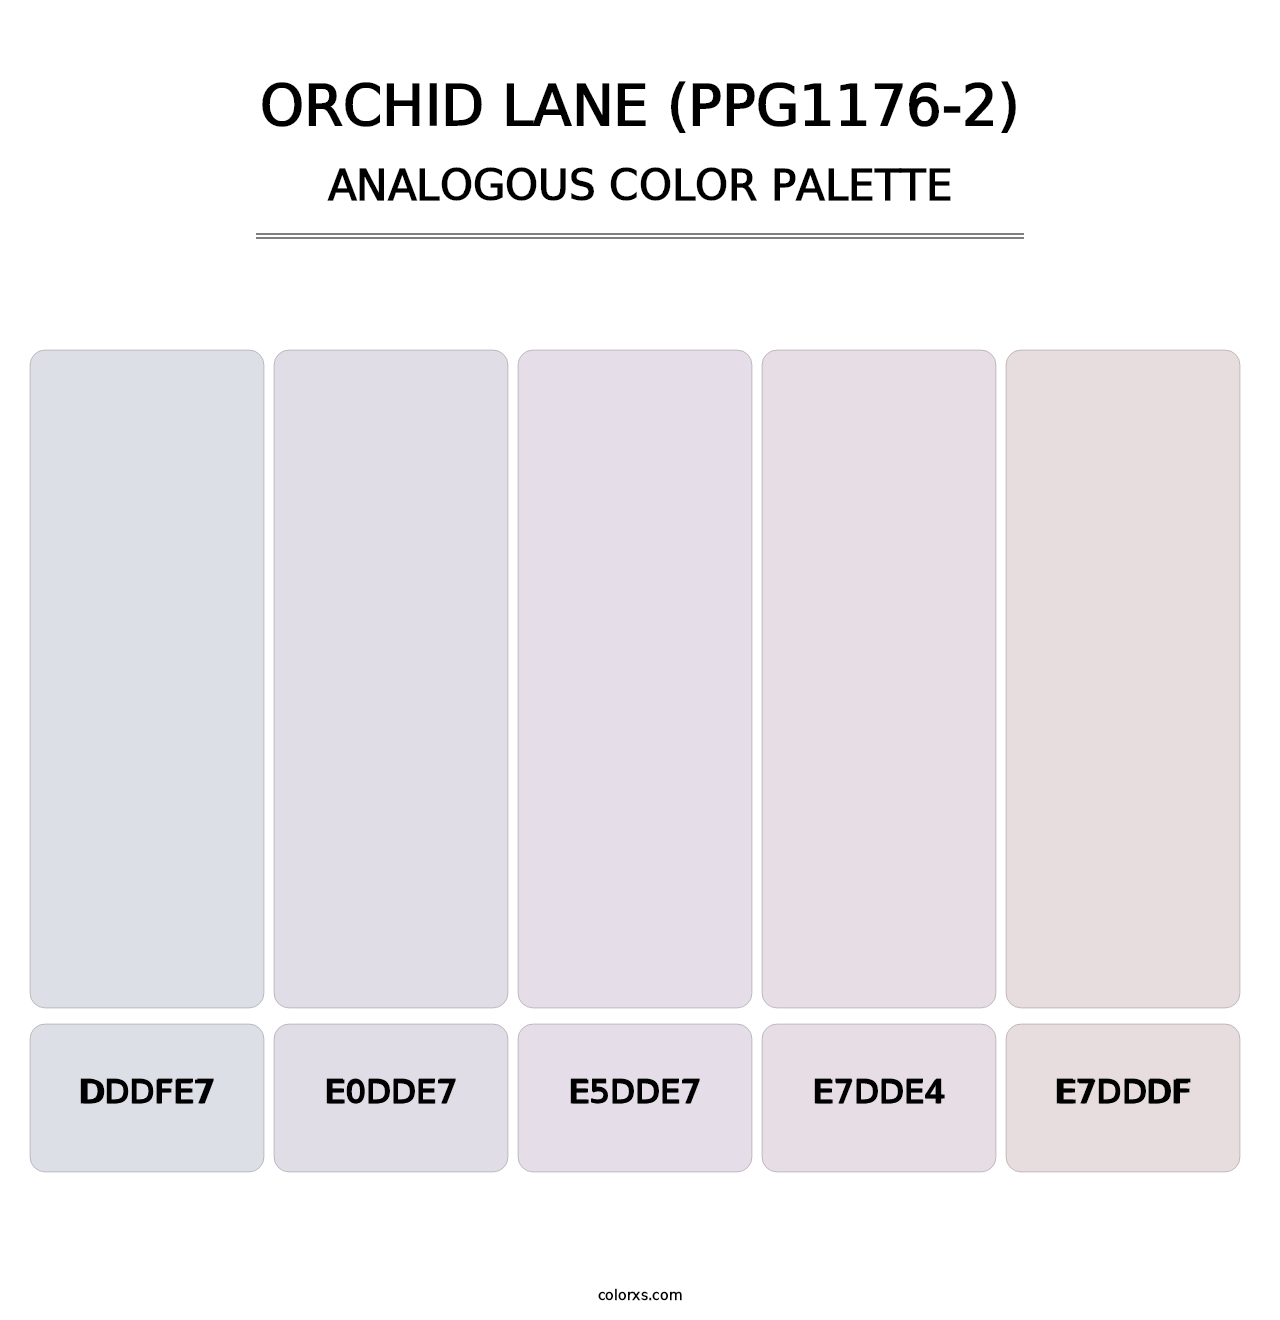 Orchid Lane (PPG1176-2) - Analogous Color Palette